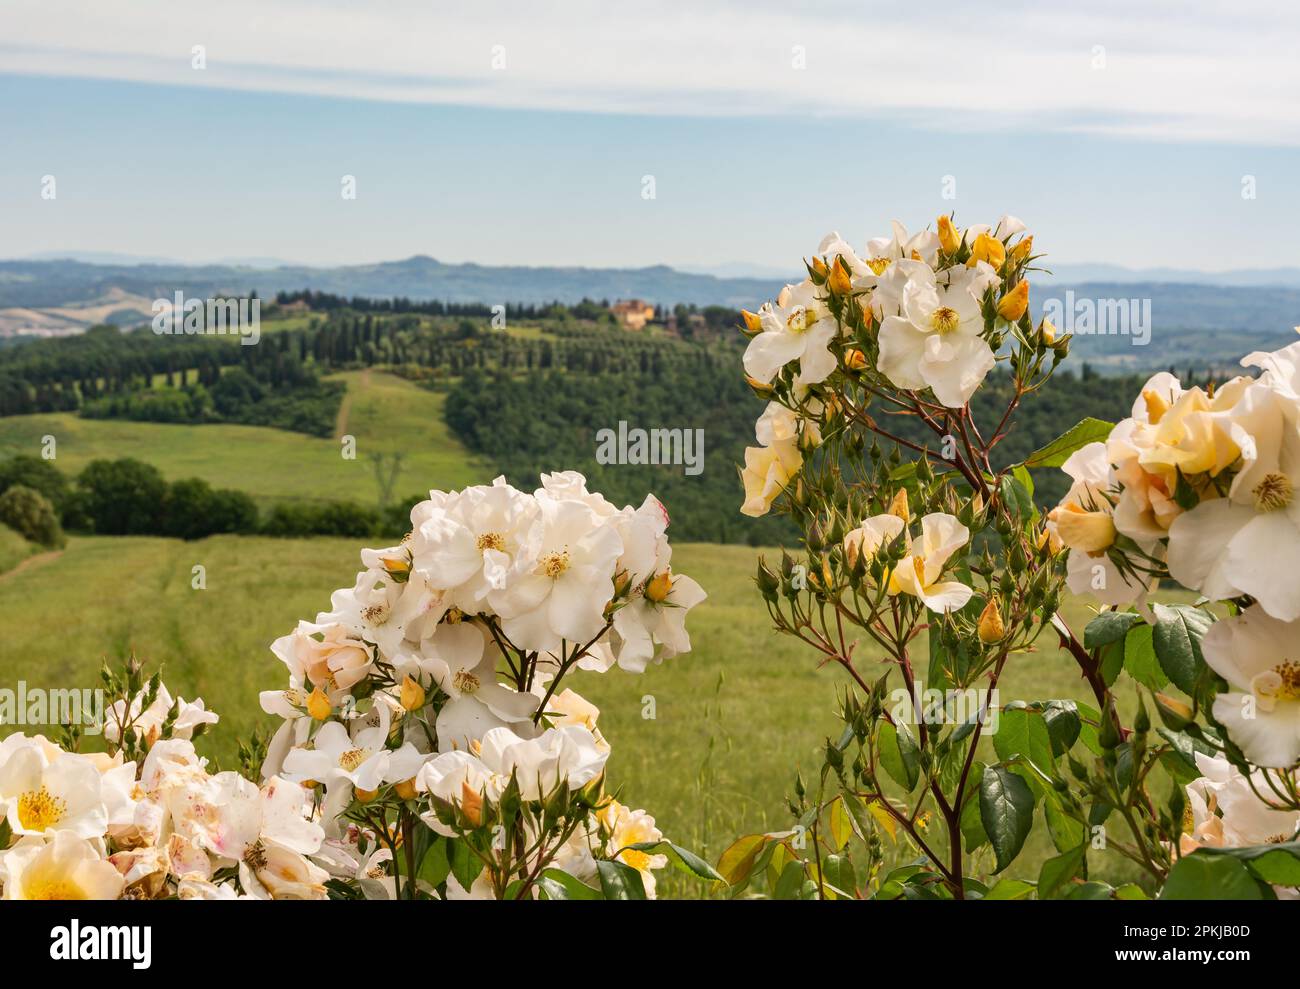 Rosa selvaggia, Rosa canina in fiore in primavera con le colline toscane sullo sfondo - Gambassi Terme, Toscana, Italia centrale - chiuso Foto Stock